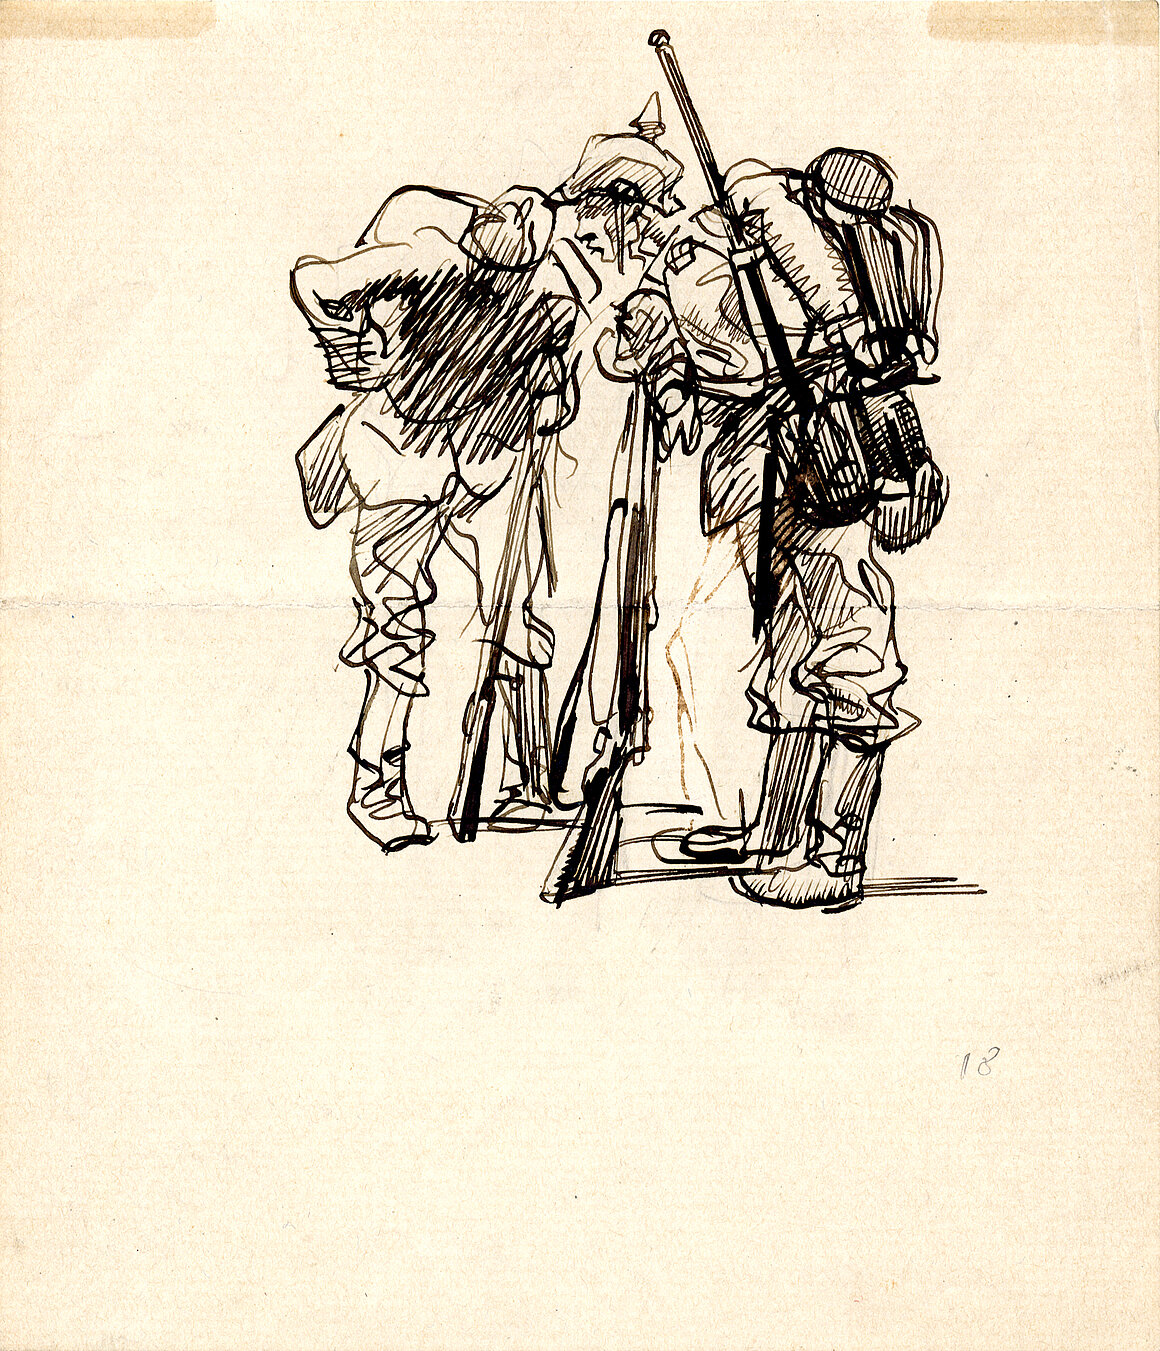 Heinrich Kley, Zeichnung Heinrich Kley, 1918